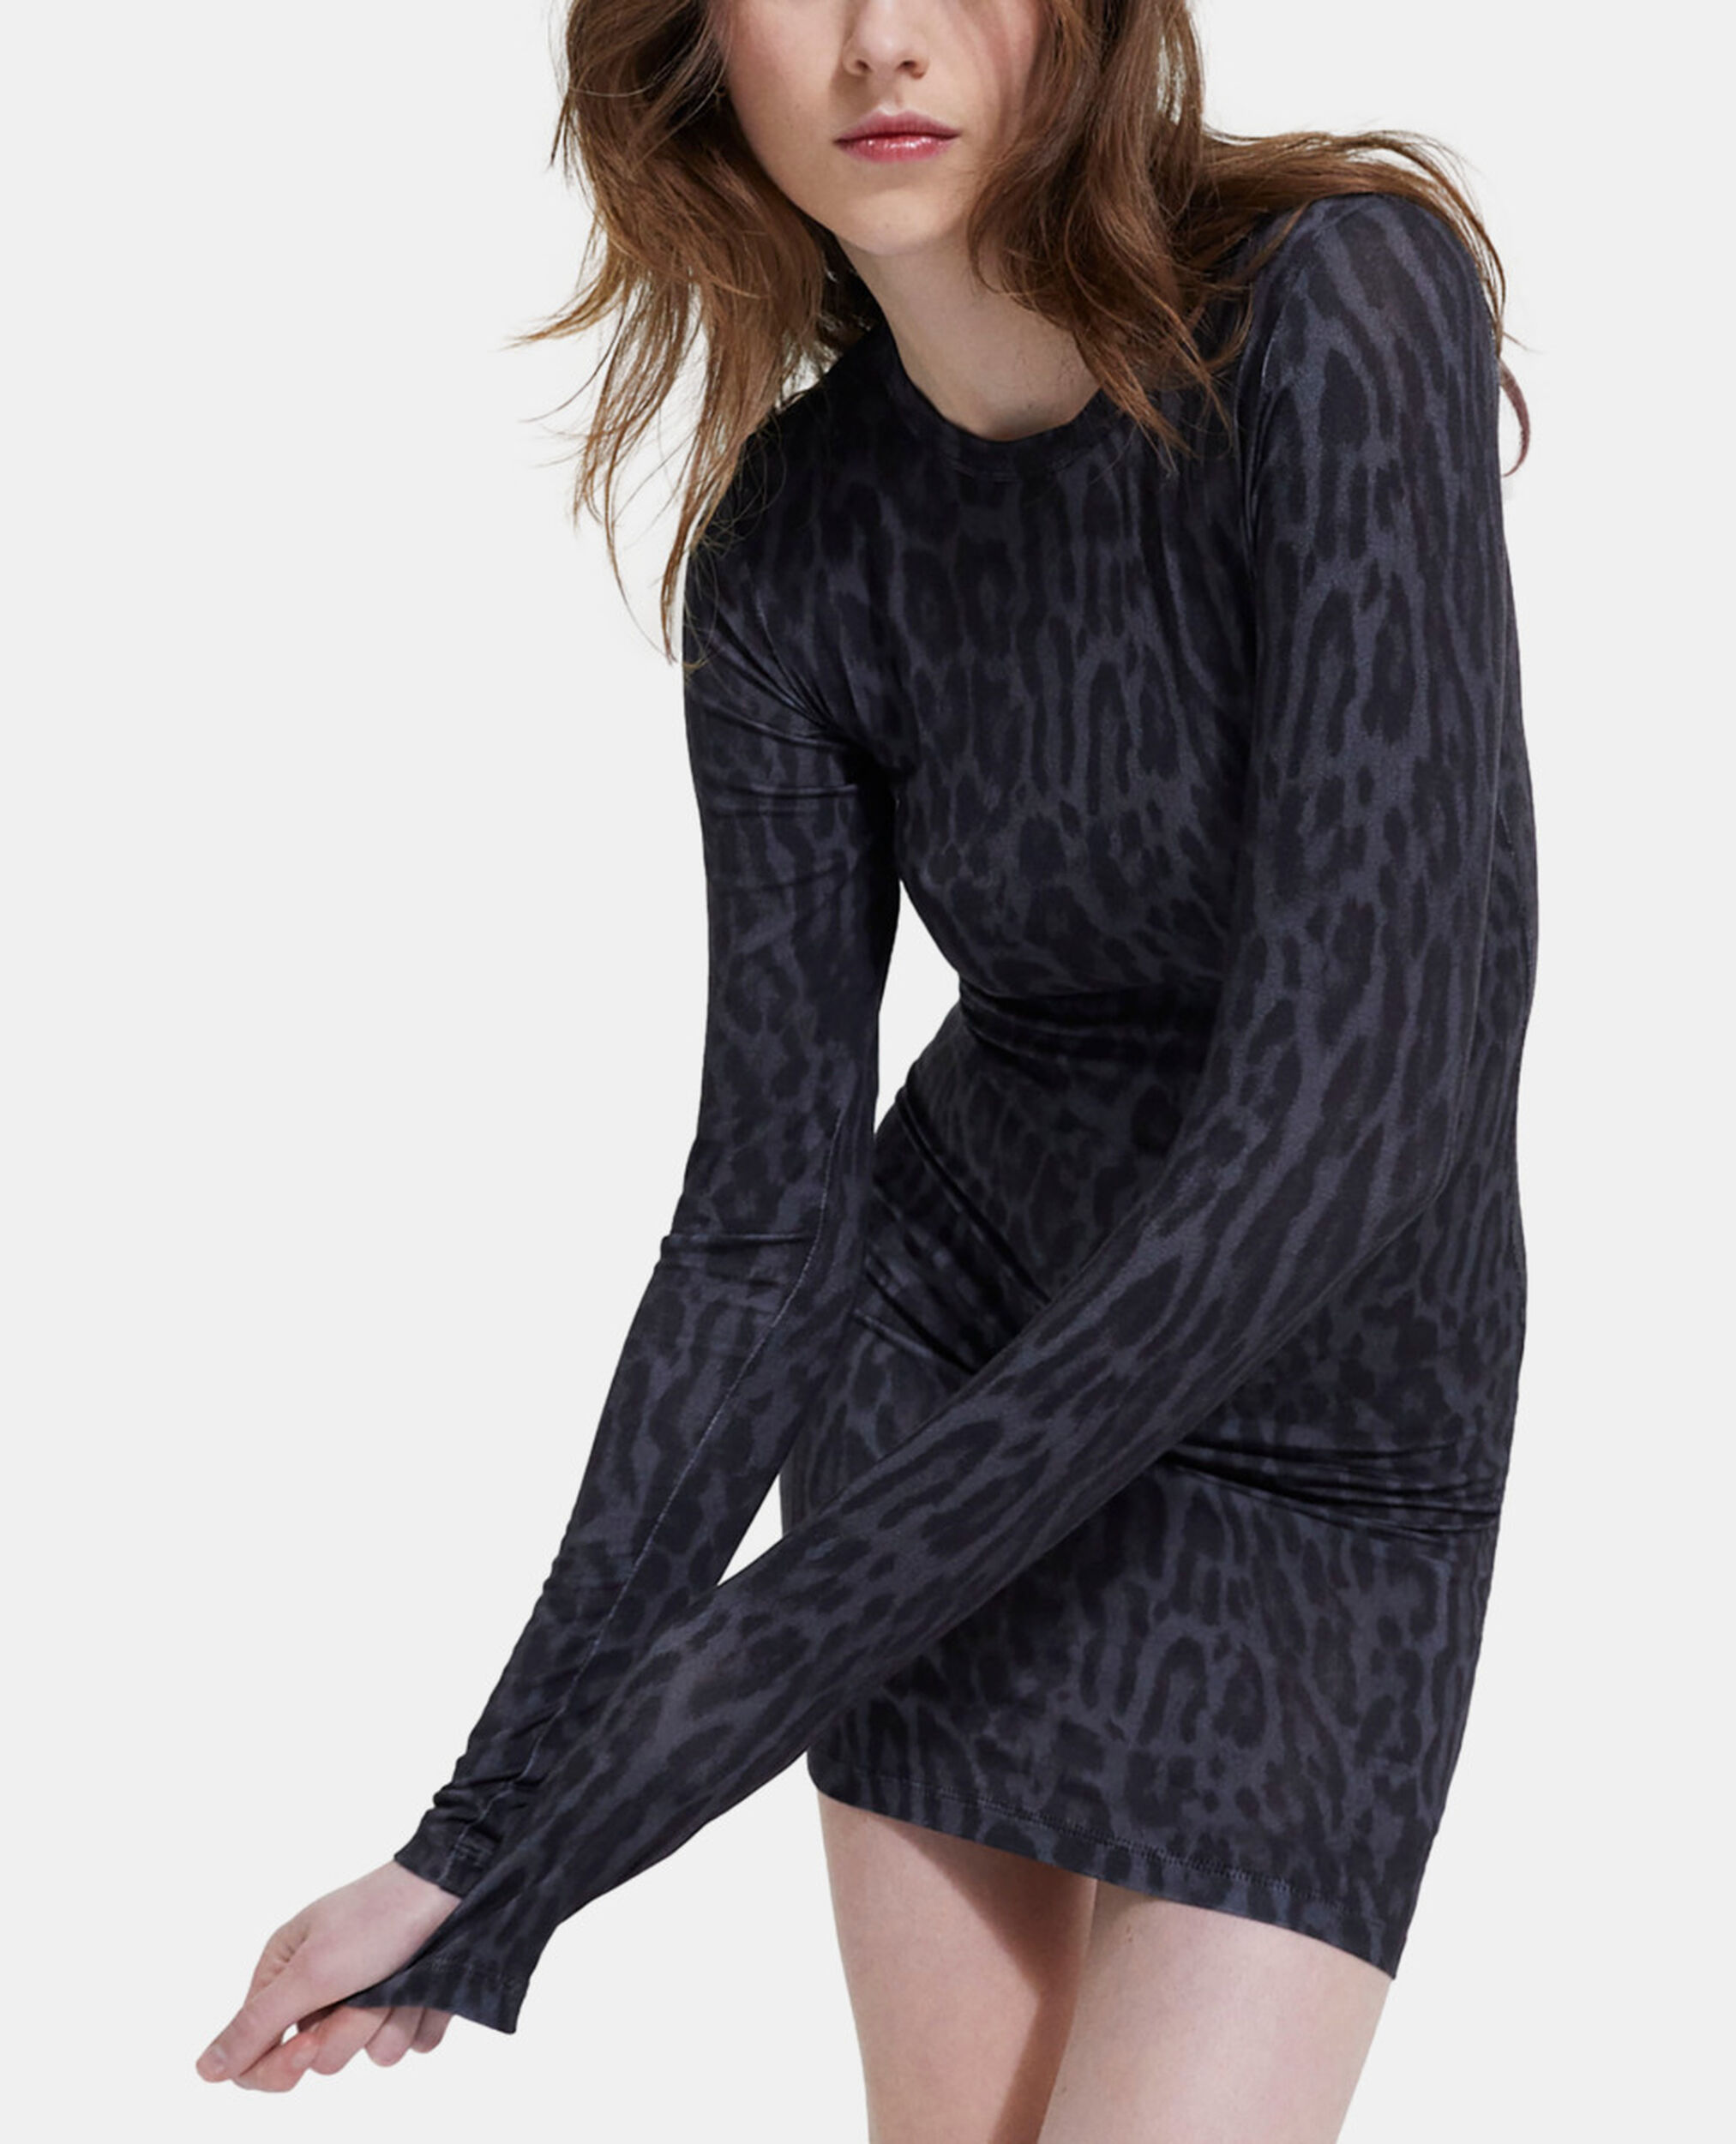 Short dress with leopard print, BLACK, hi-res image number null